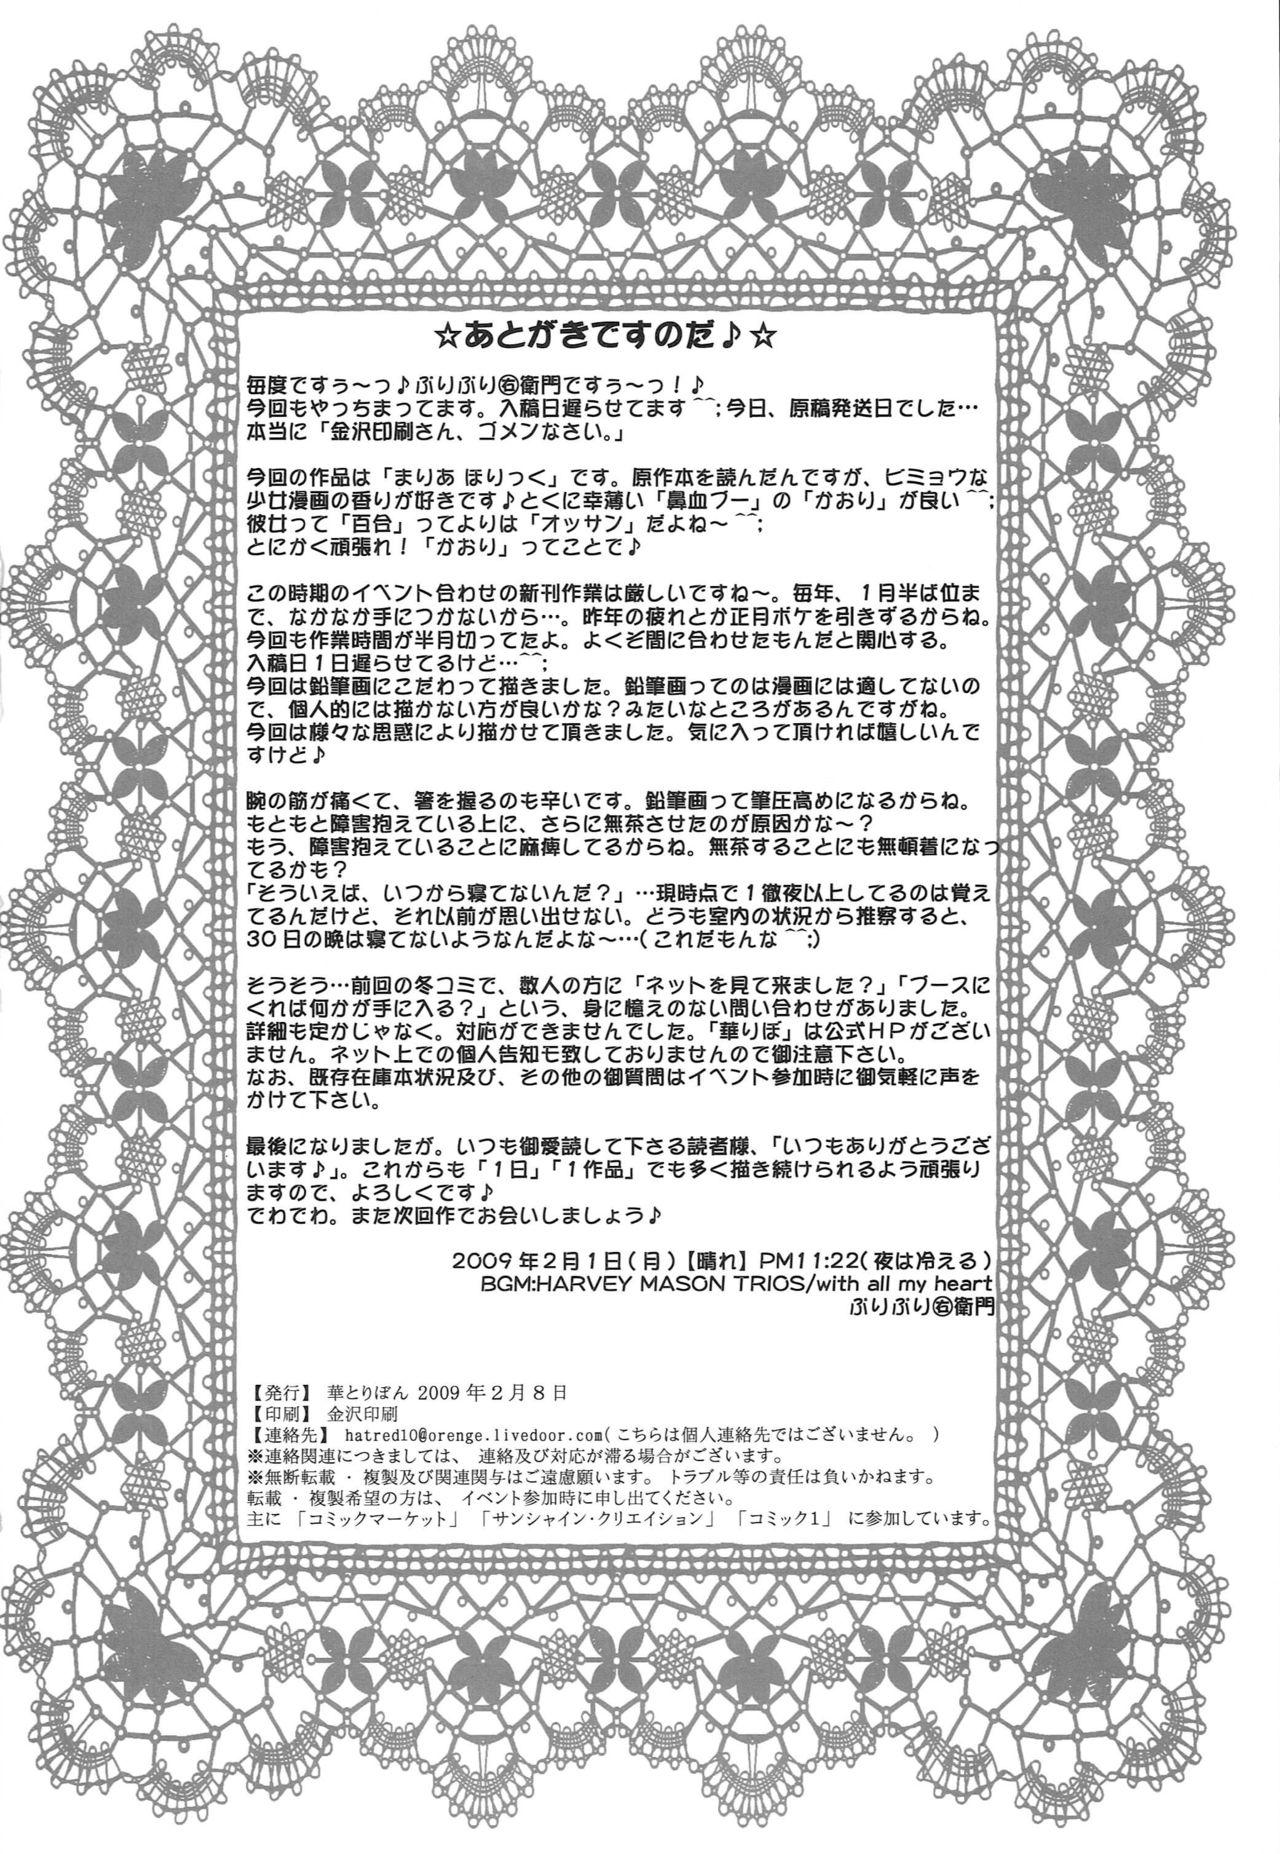 Bunda Grande Seinen Hana to Ribon 38 - Maria holic Room - Page 20